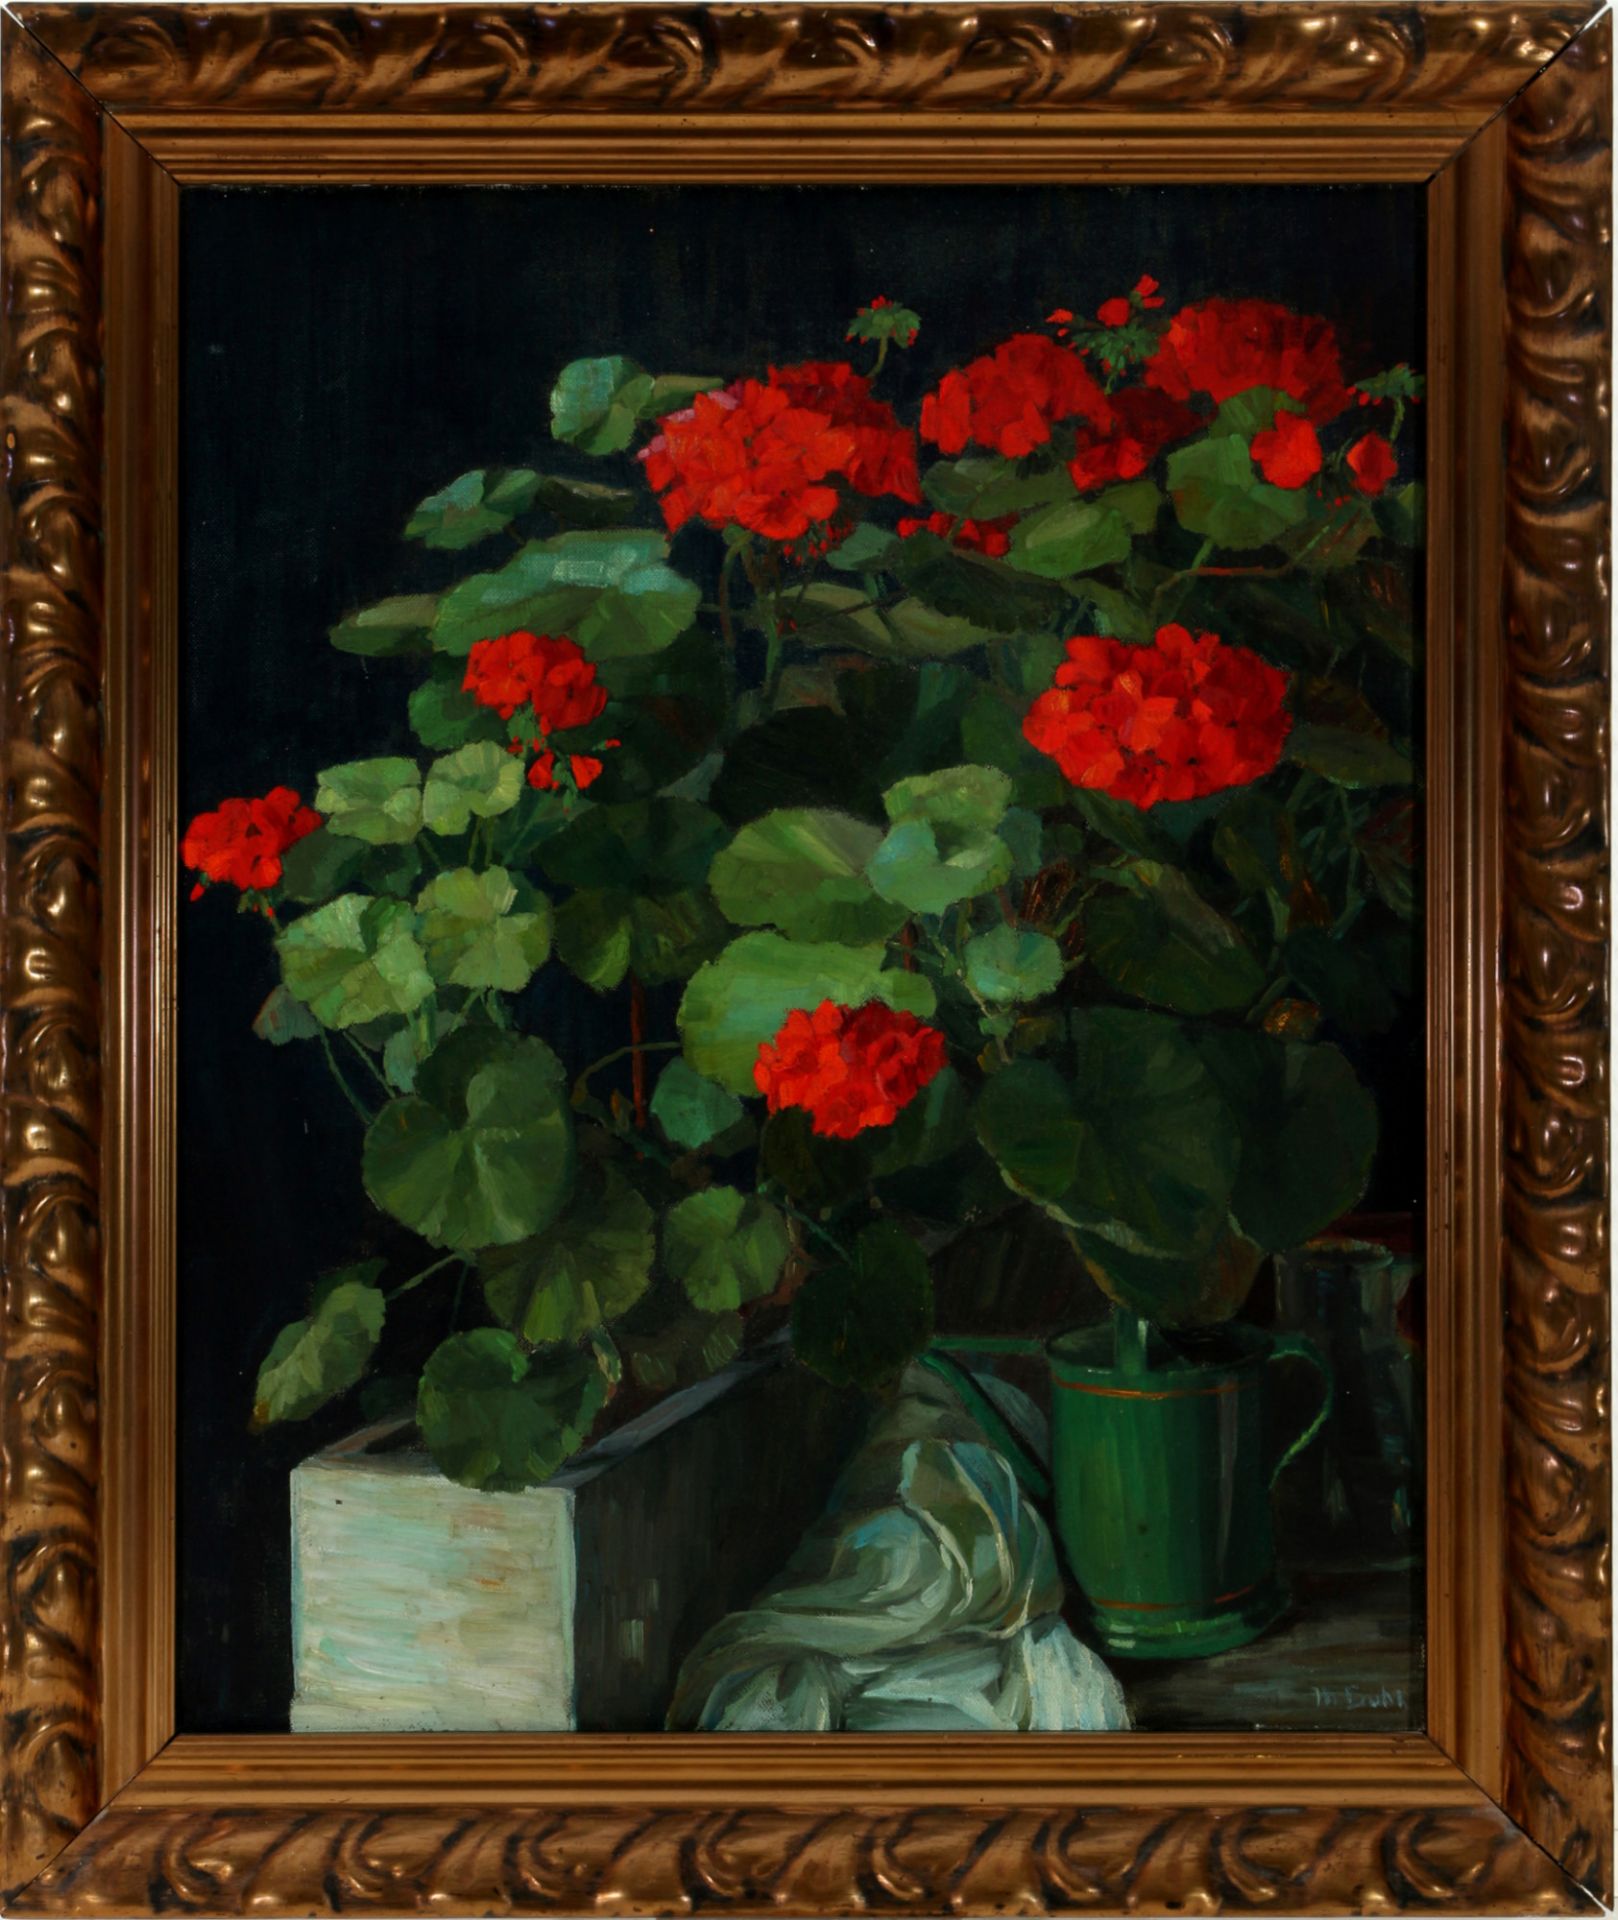 Martha BÜHL (1877-1942) floral still life, Blumenstillleben, - Image 2 of 4